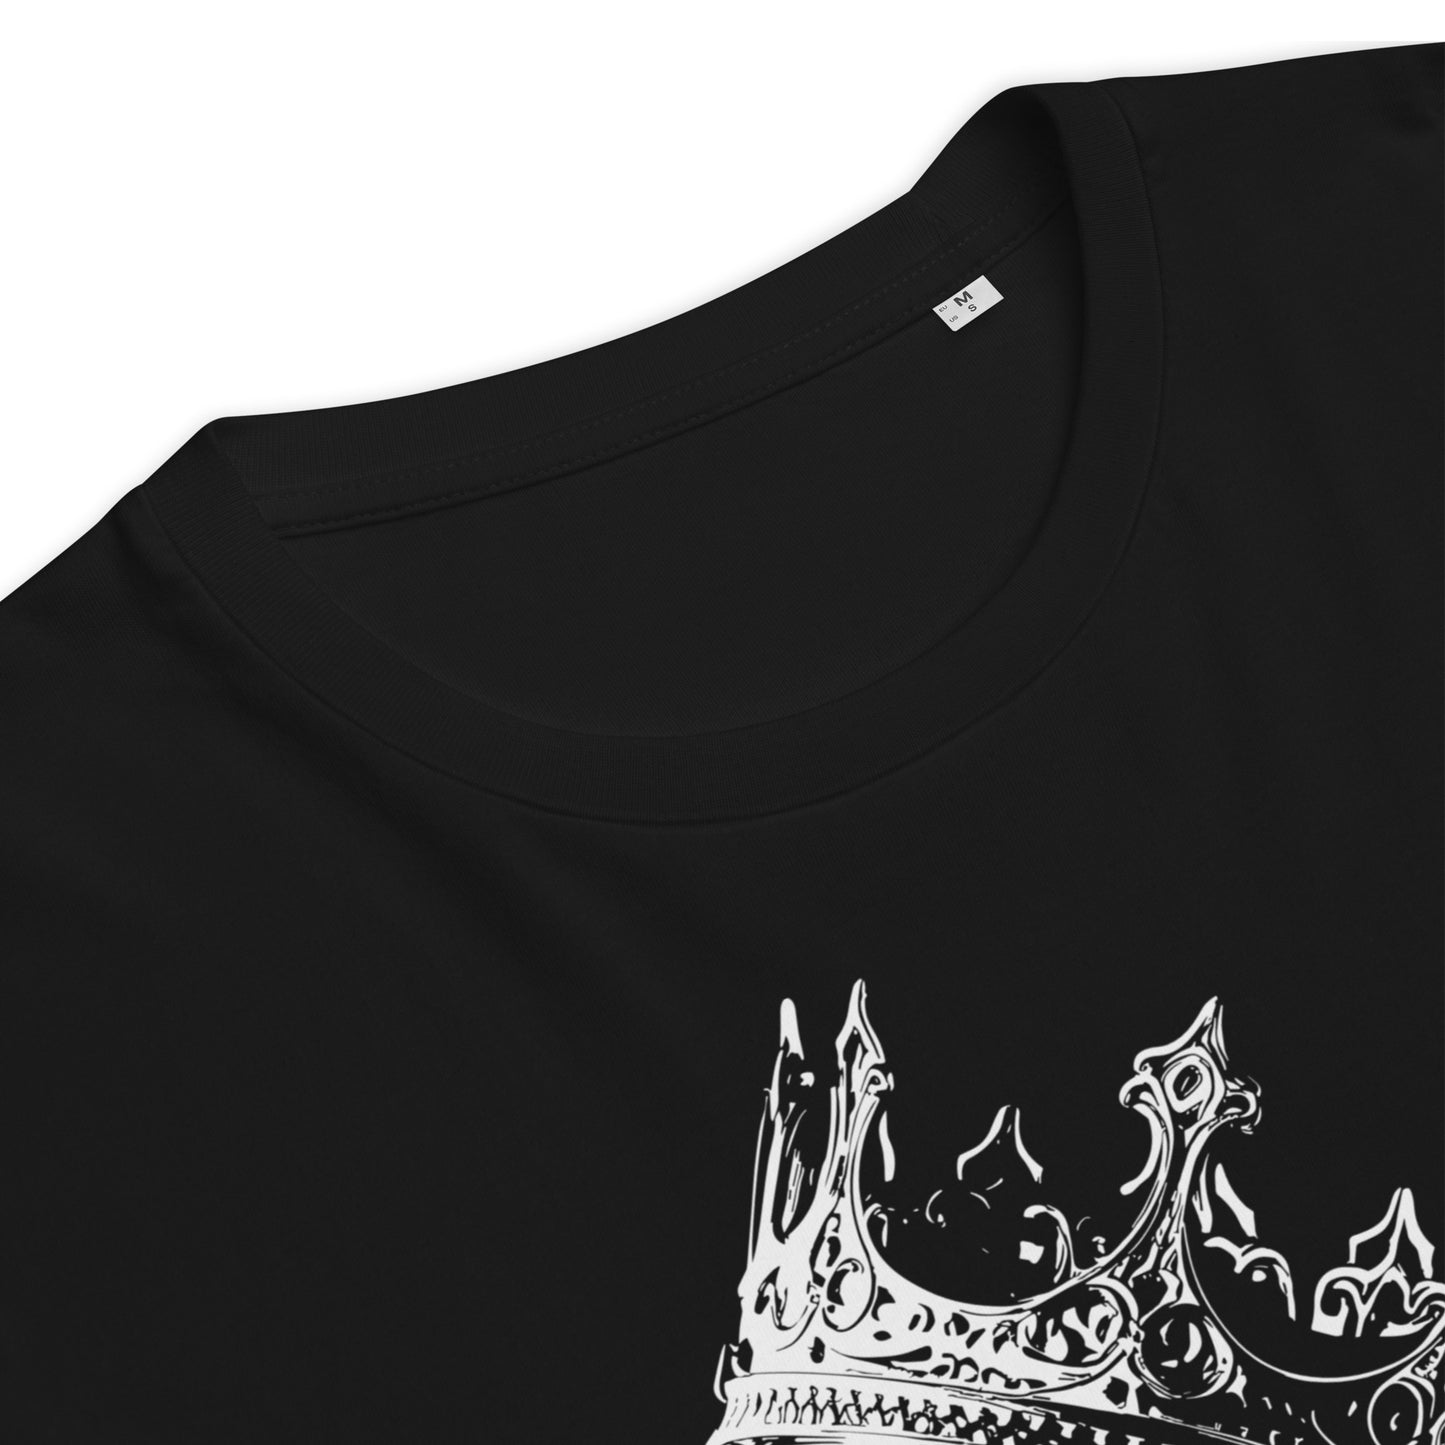 DSTNY Queen - Premium T-Shirt